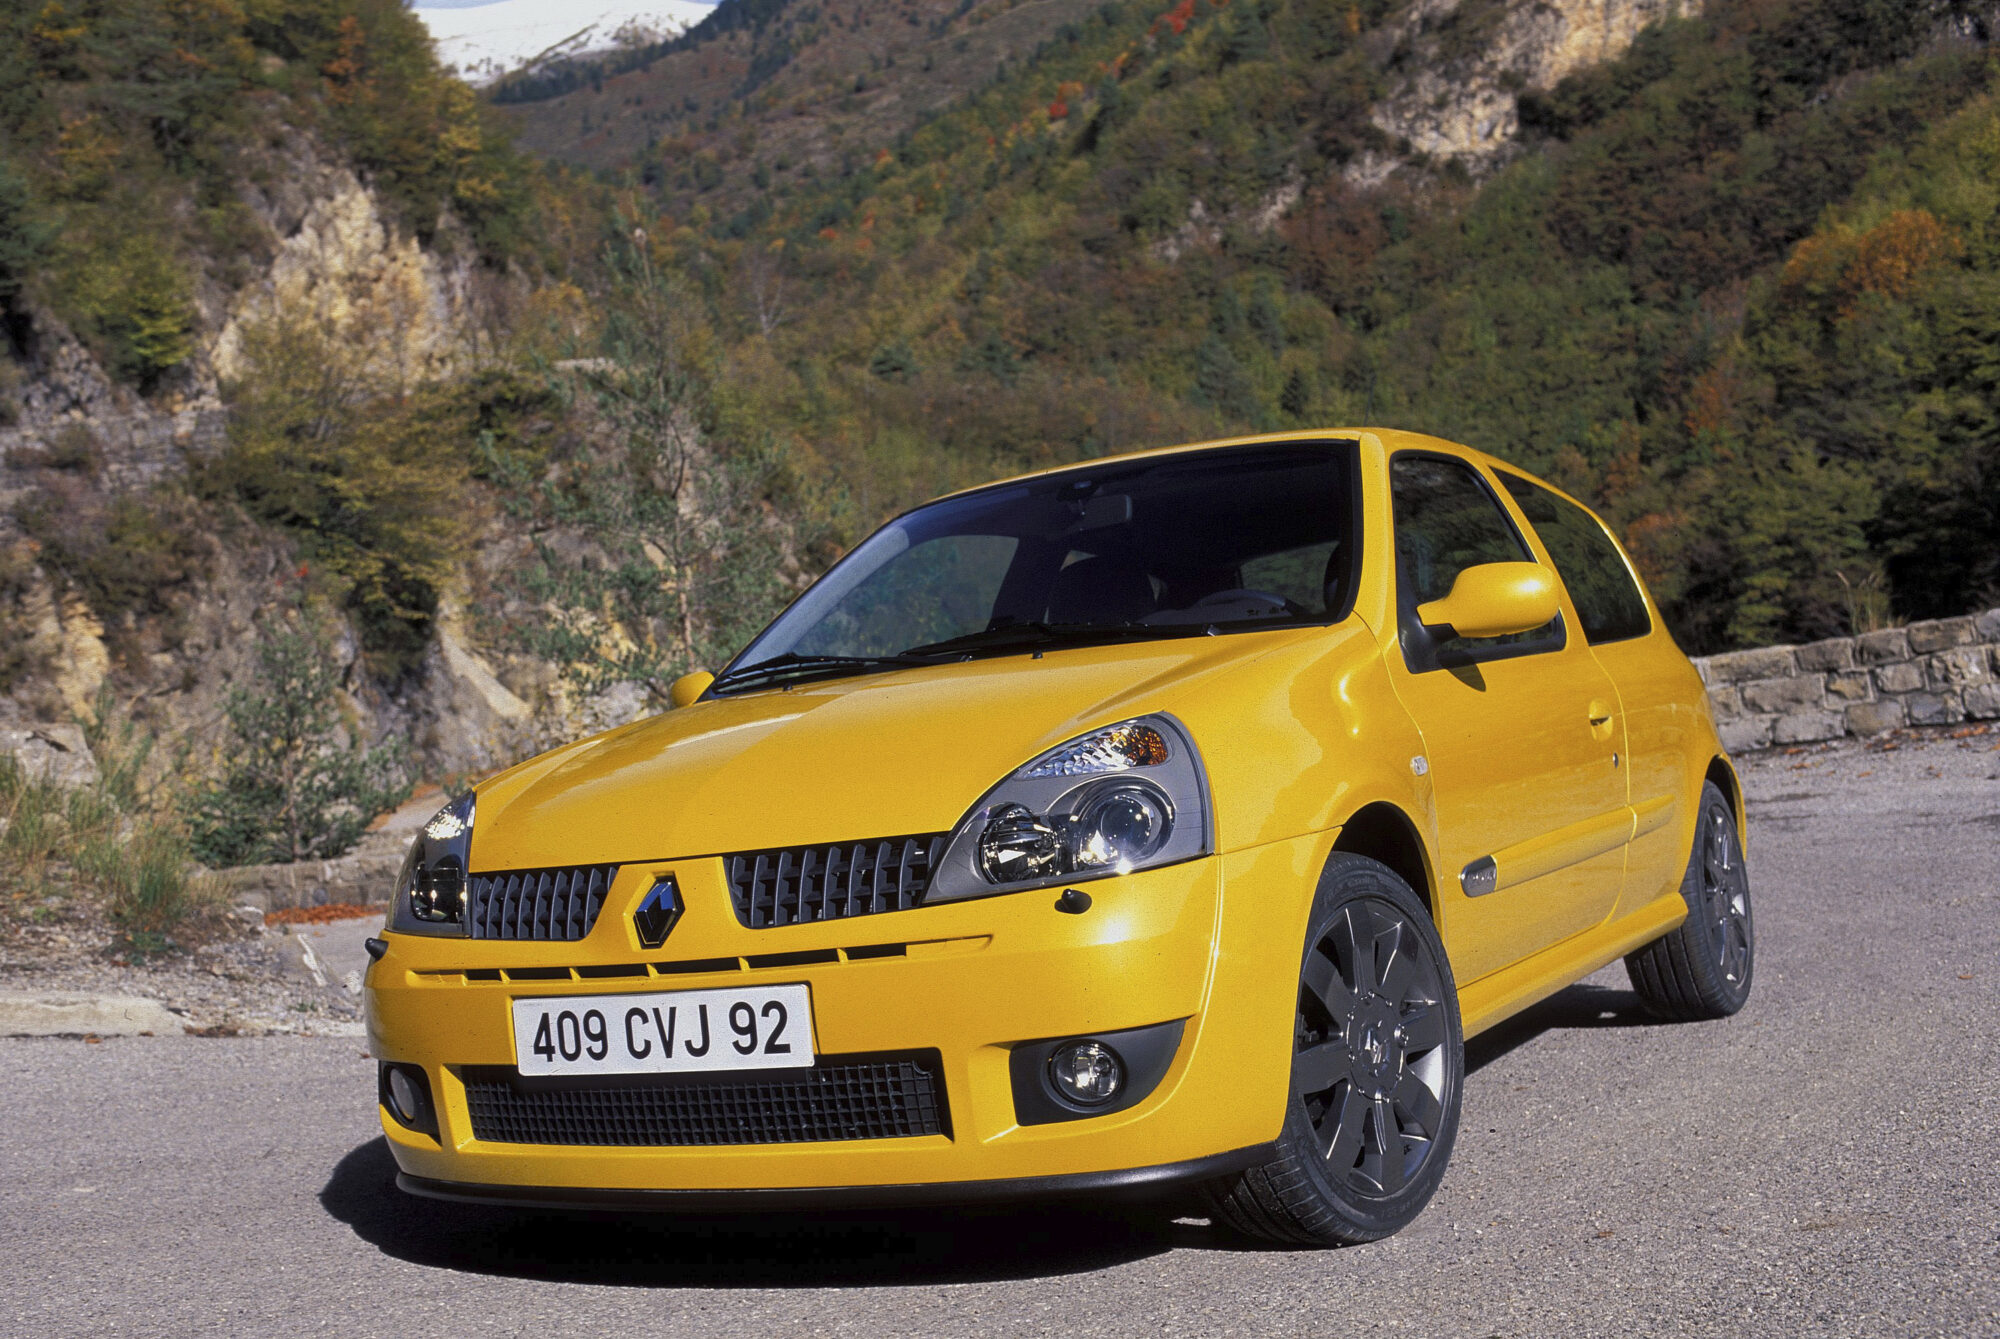 Story - Renault Sport : le culte de la performance sur route